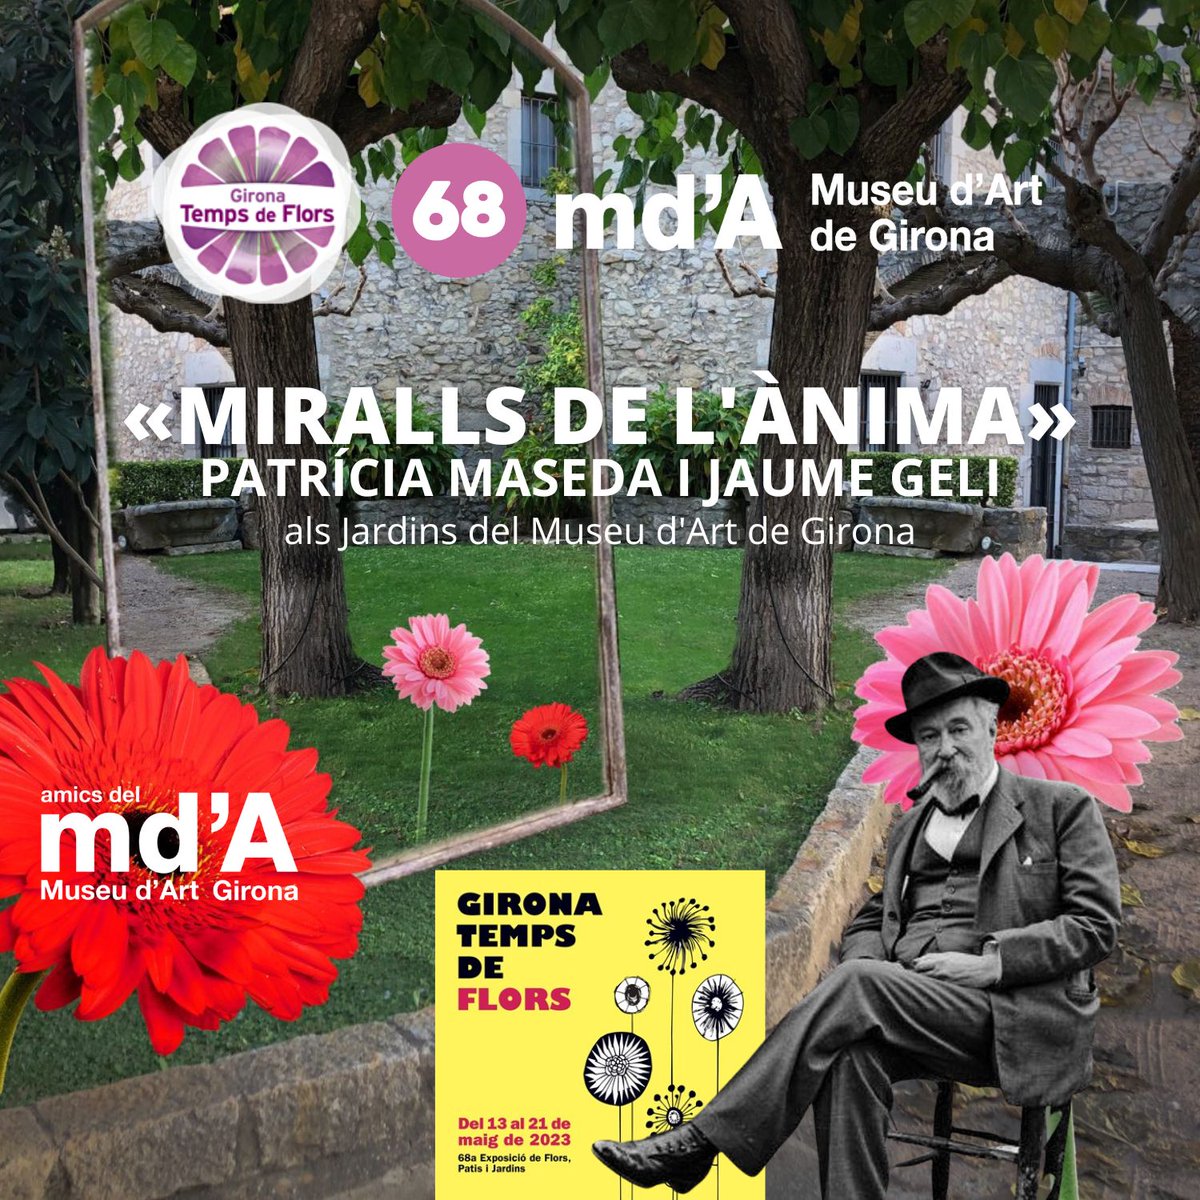 Participem al #gironatempsdeflors2023, amb «Miralls de l'ànima», dels artistes @patricia_maseda i @JaumeGeli. Som al punt 68, als Jardins del @MuseuArtGirona. Estem convençuts que us agradarà molt!